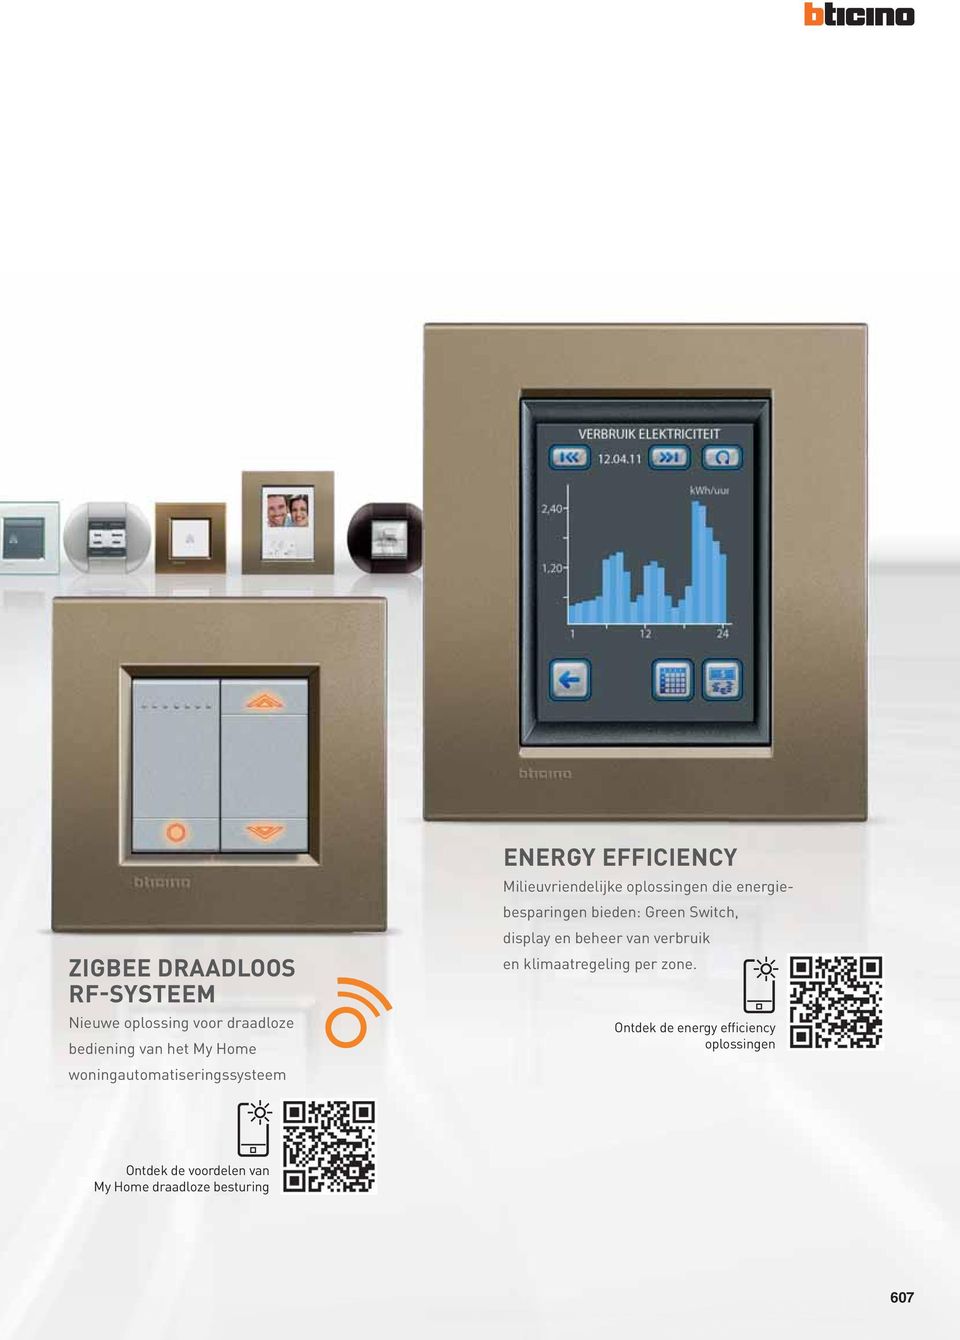 energiebesparingen bieden: Green Switch, display en beheer van verbruik en klimaatregeling